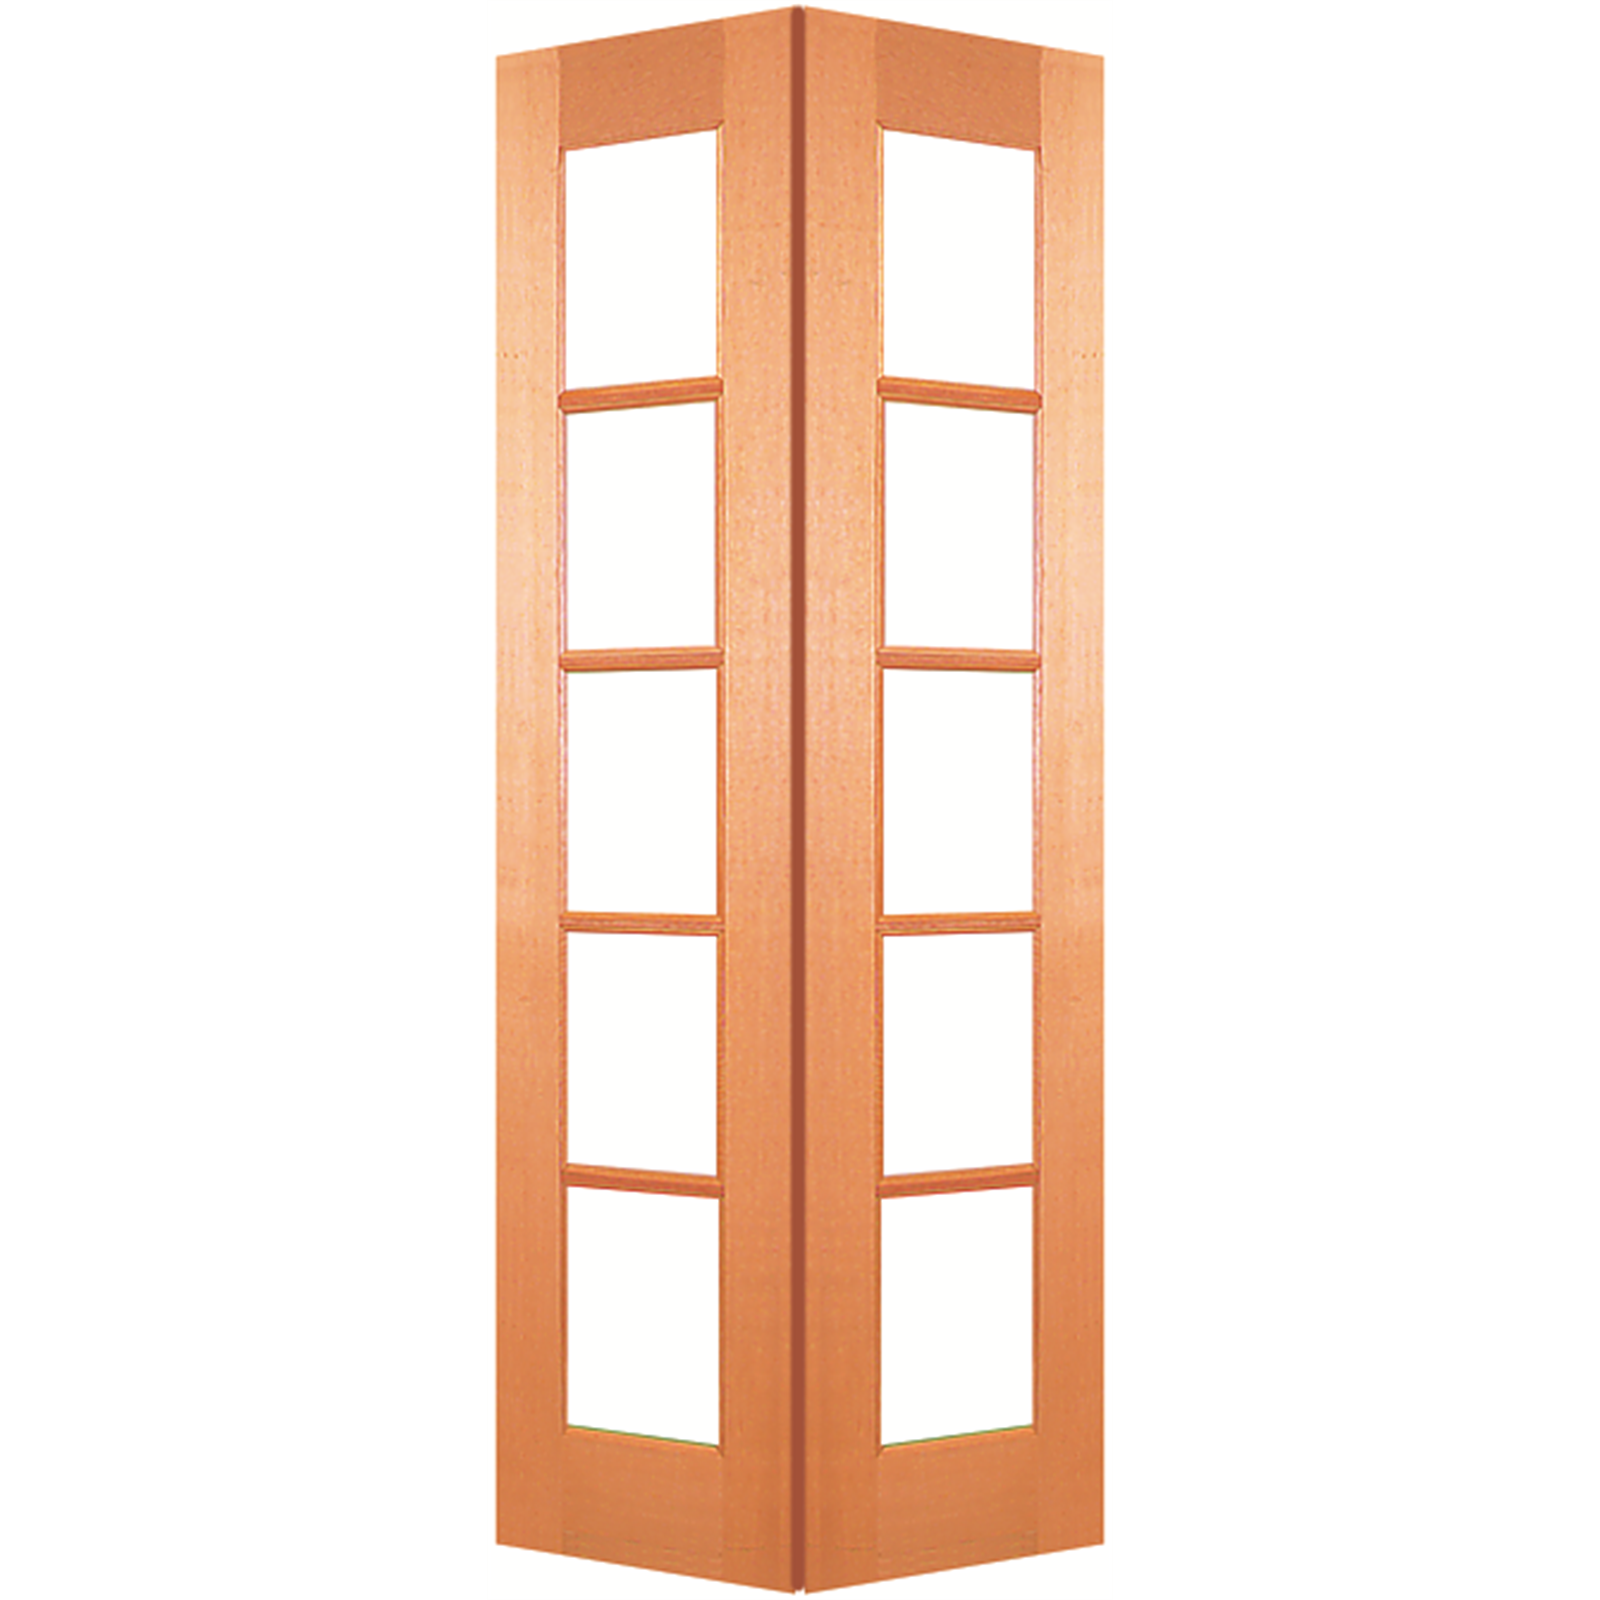 Woodcraft Doors 2040 x 820 x 35mm 5 Lite Internal Bi-Fold Door Set with Safety Glass